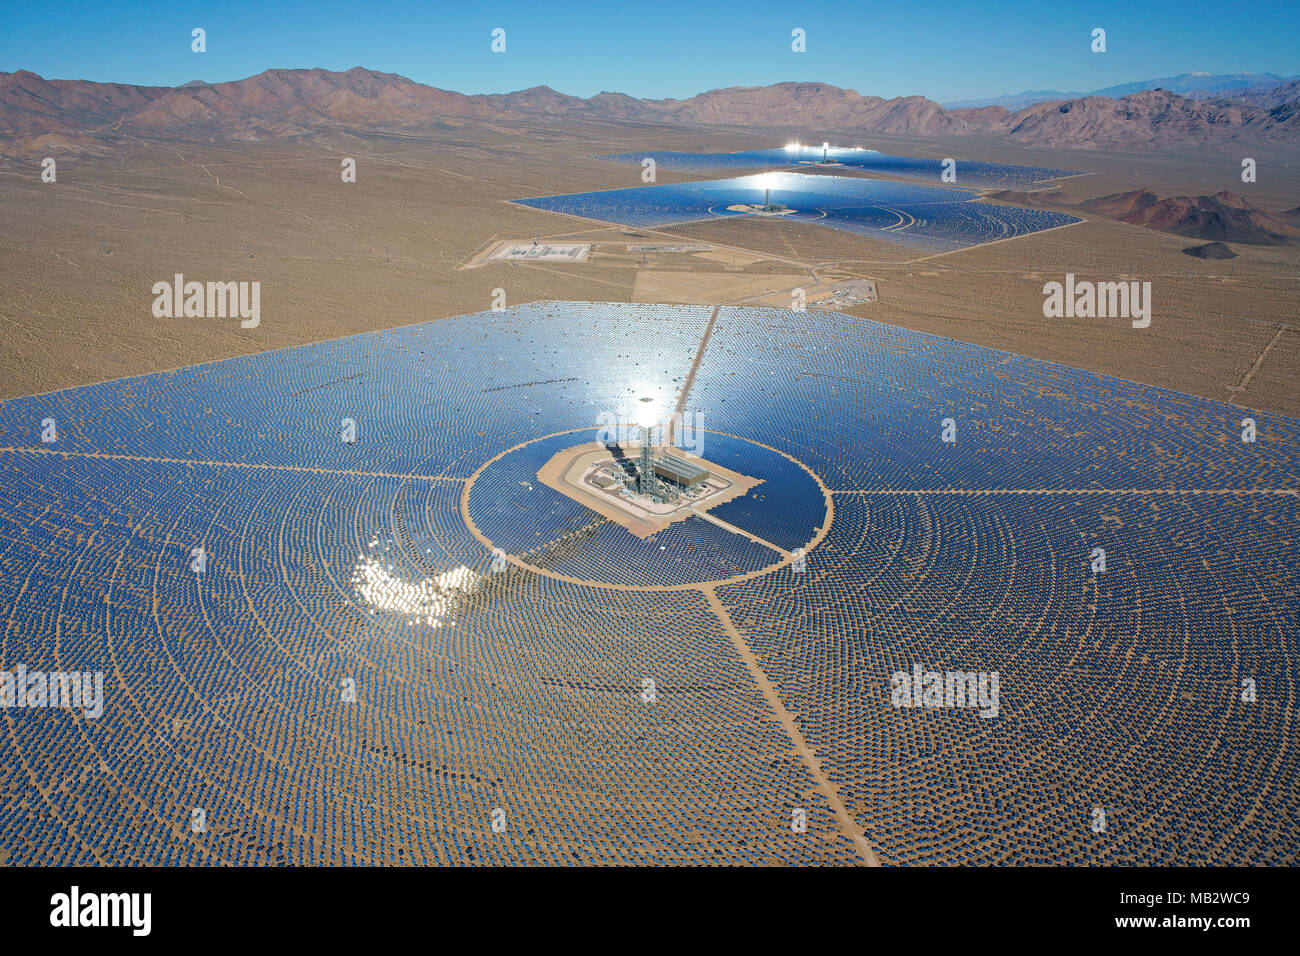 VUE AÉRIENNE.Système de production d'électricité solaire Ivanpah (la plus grande centrale solaire concentrée au monde en 2018).Désert de Mojave, Californie, États-Unis. Banque D'Images